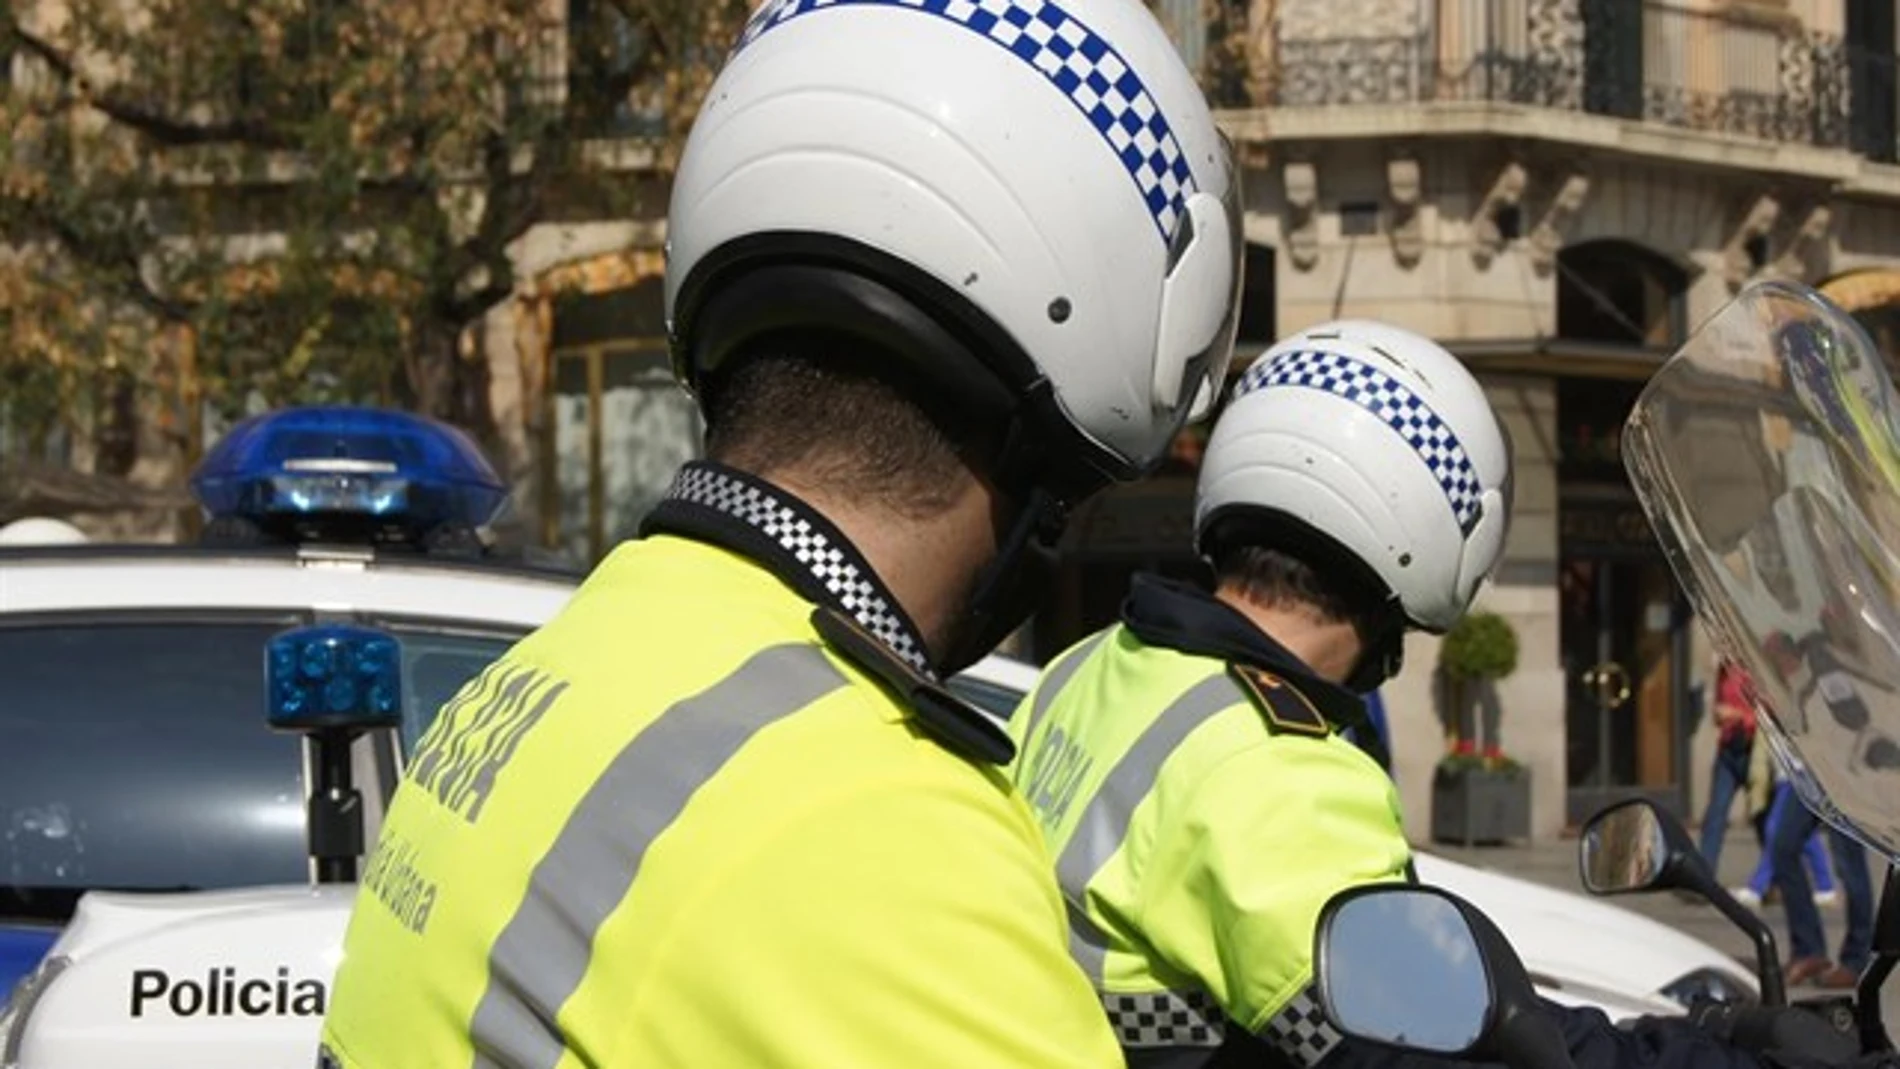 La Guardia Urbana de Barcelona custodia urnas del Estado para evitar su uso el 1-O